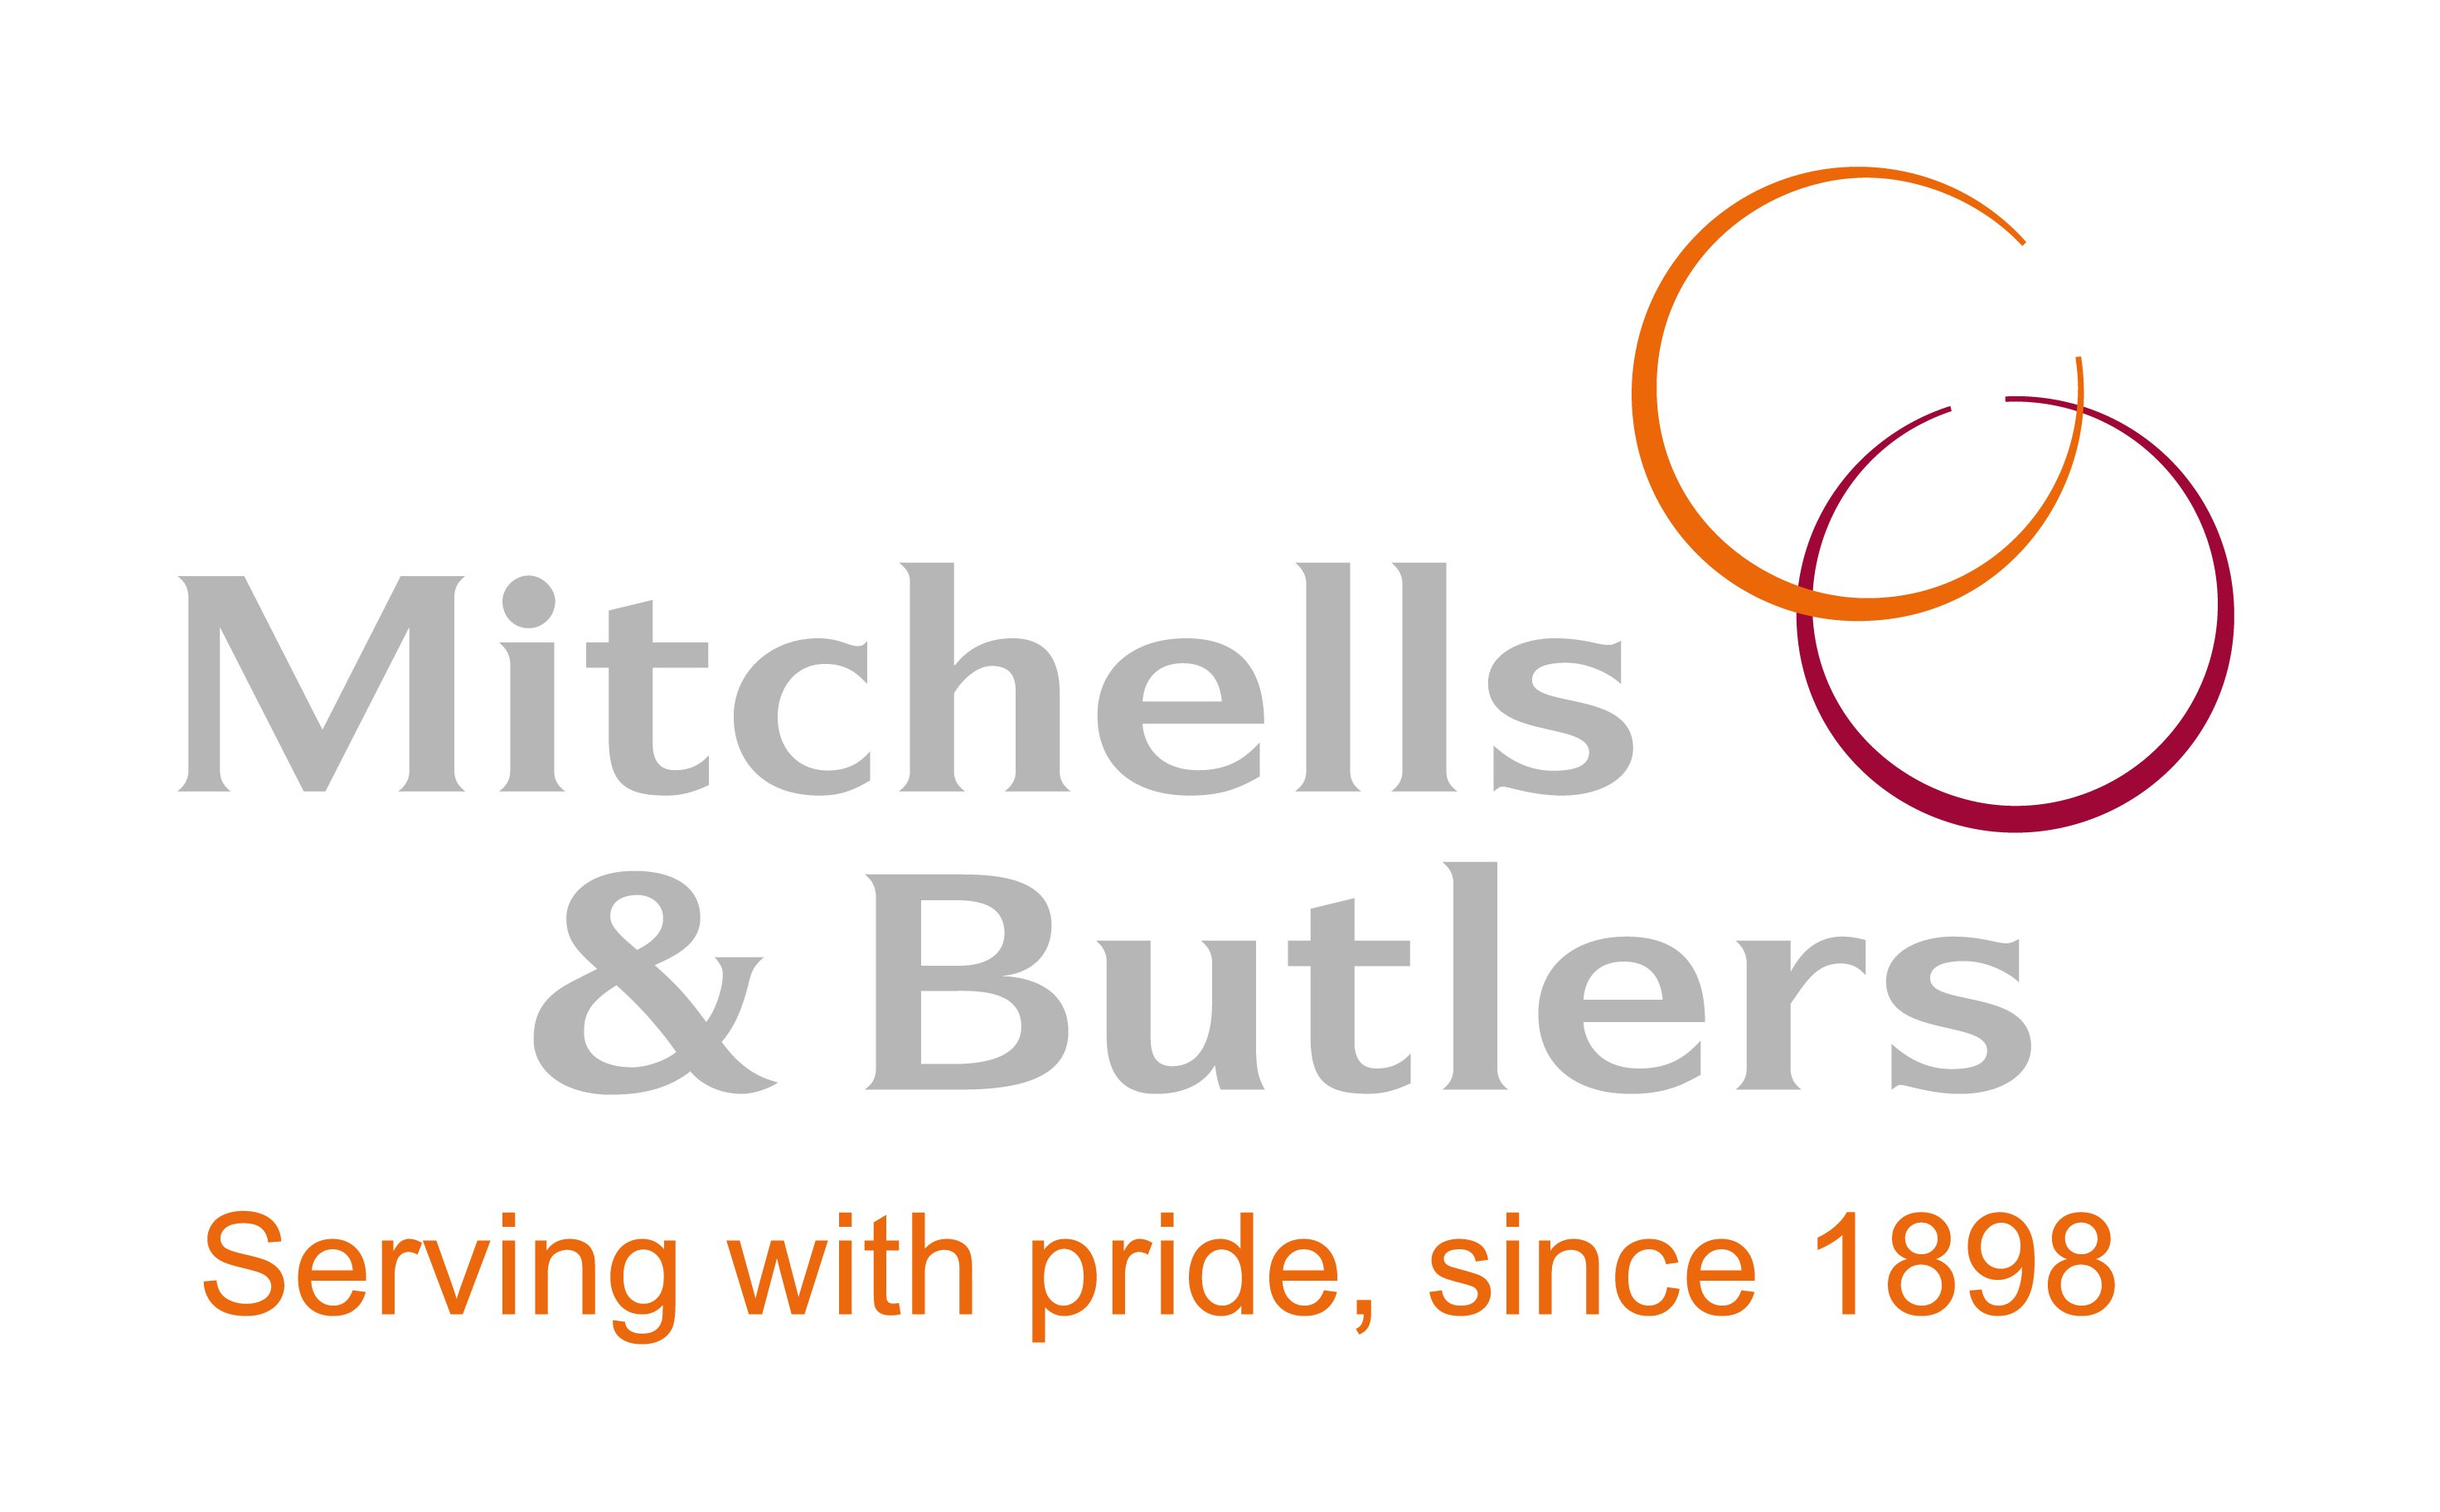 Mitchells & Butlers logo